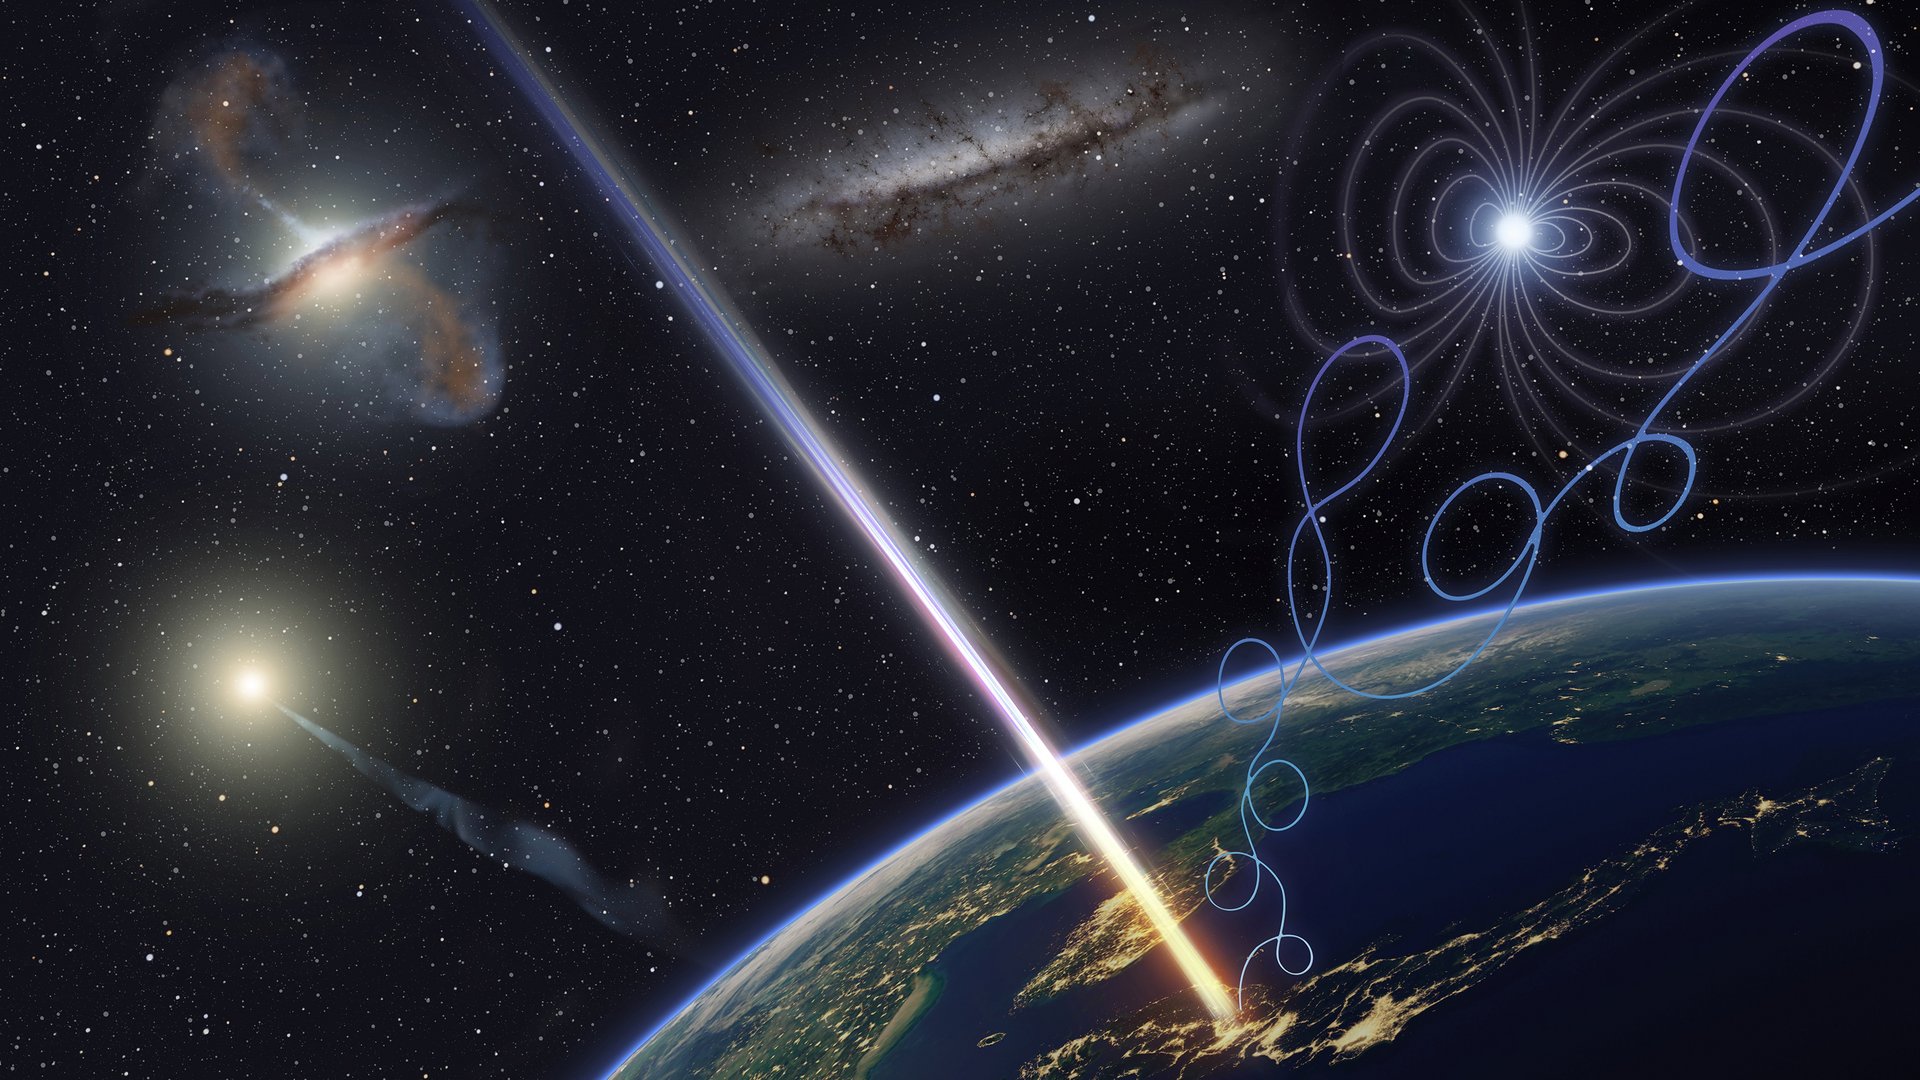 Ein hell leuchtender Streifen stellt das hochenergetische Teilchen dar, welches in Japan auf die Erde bei Nacht trifft, die im Anschnitt zu sehen ist. Der Hintergrund ist dunkel und zeigt noch zwei Galaxien und einen Stern mit Magnetfeldlinien sowie die Sonne, von der auch Teilchenstrahlen auf die Erde treffen.